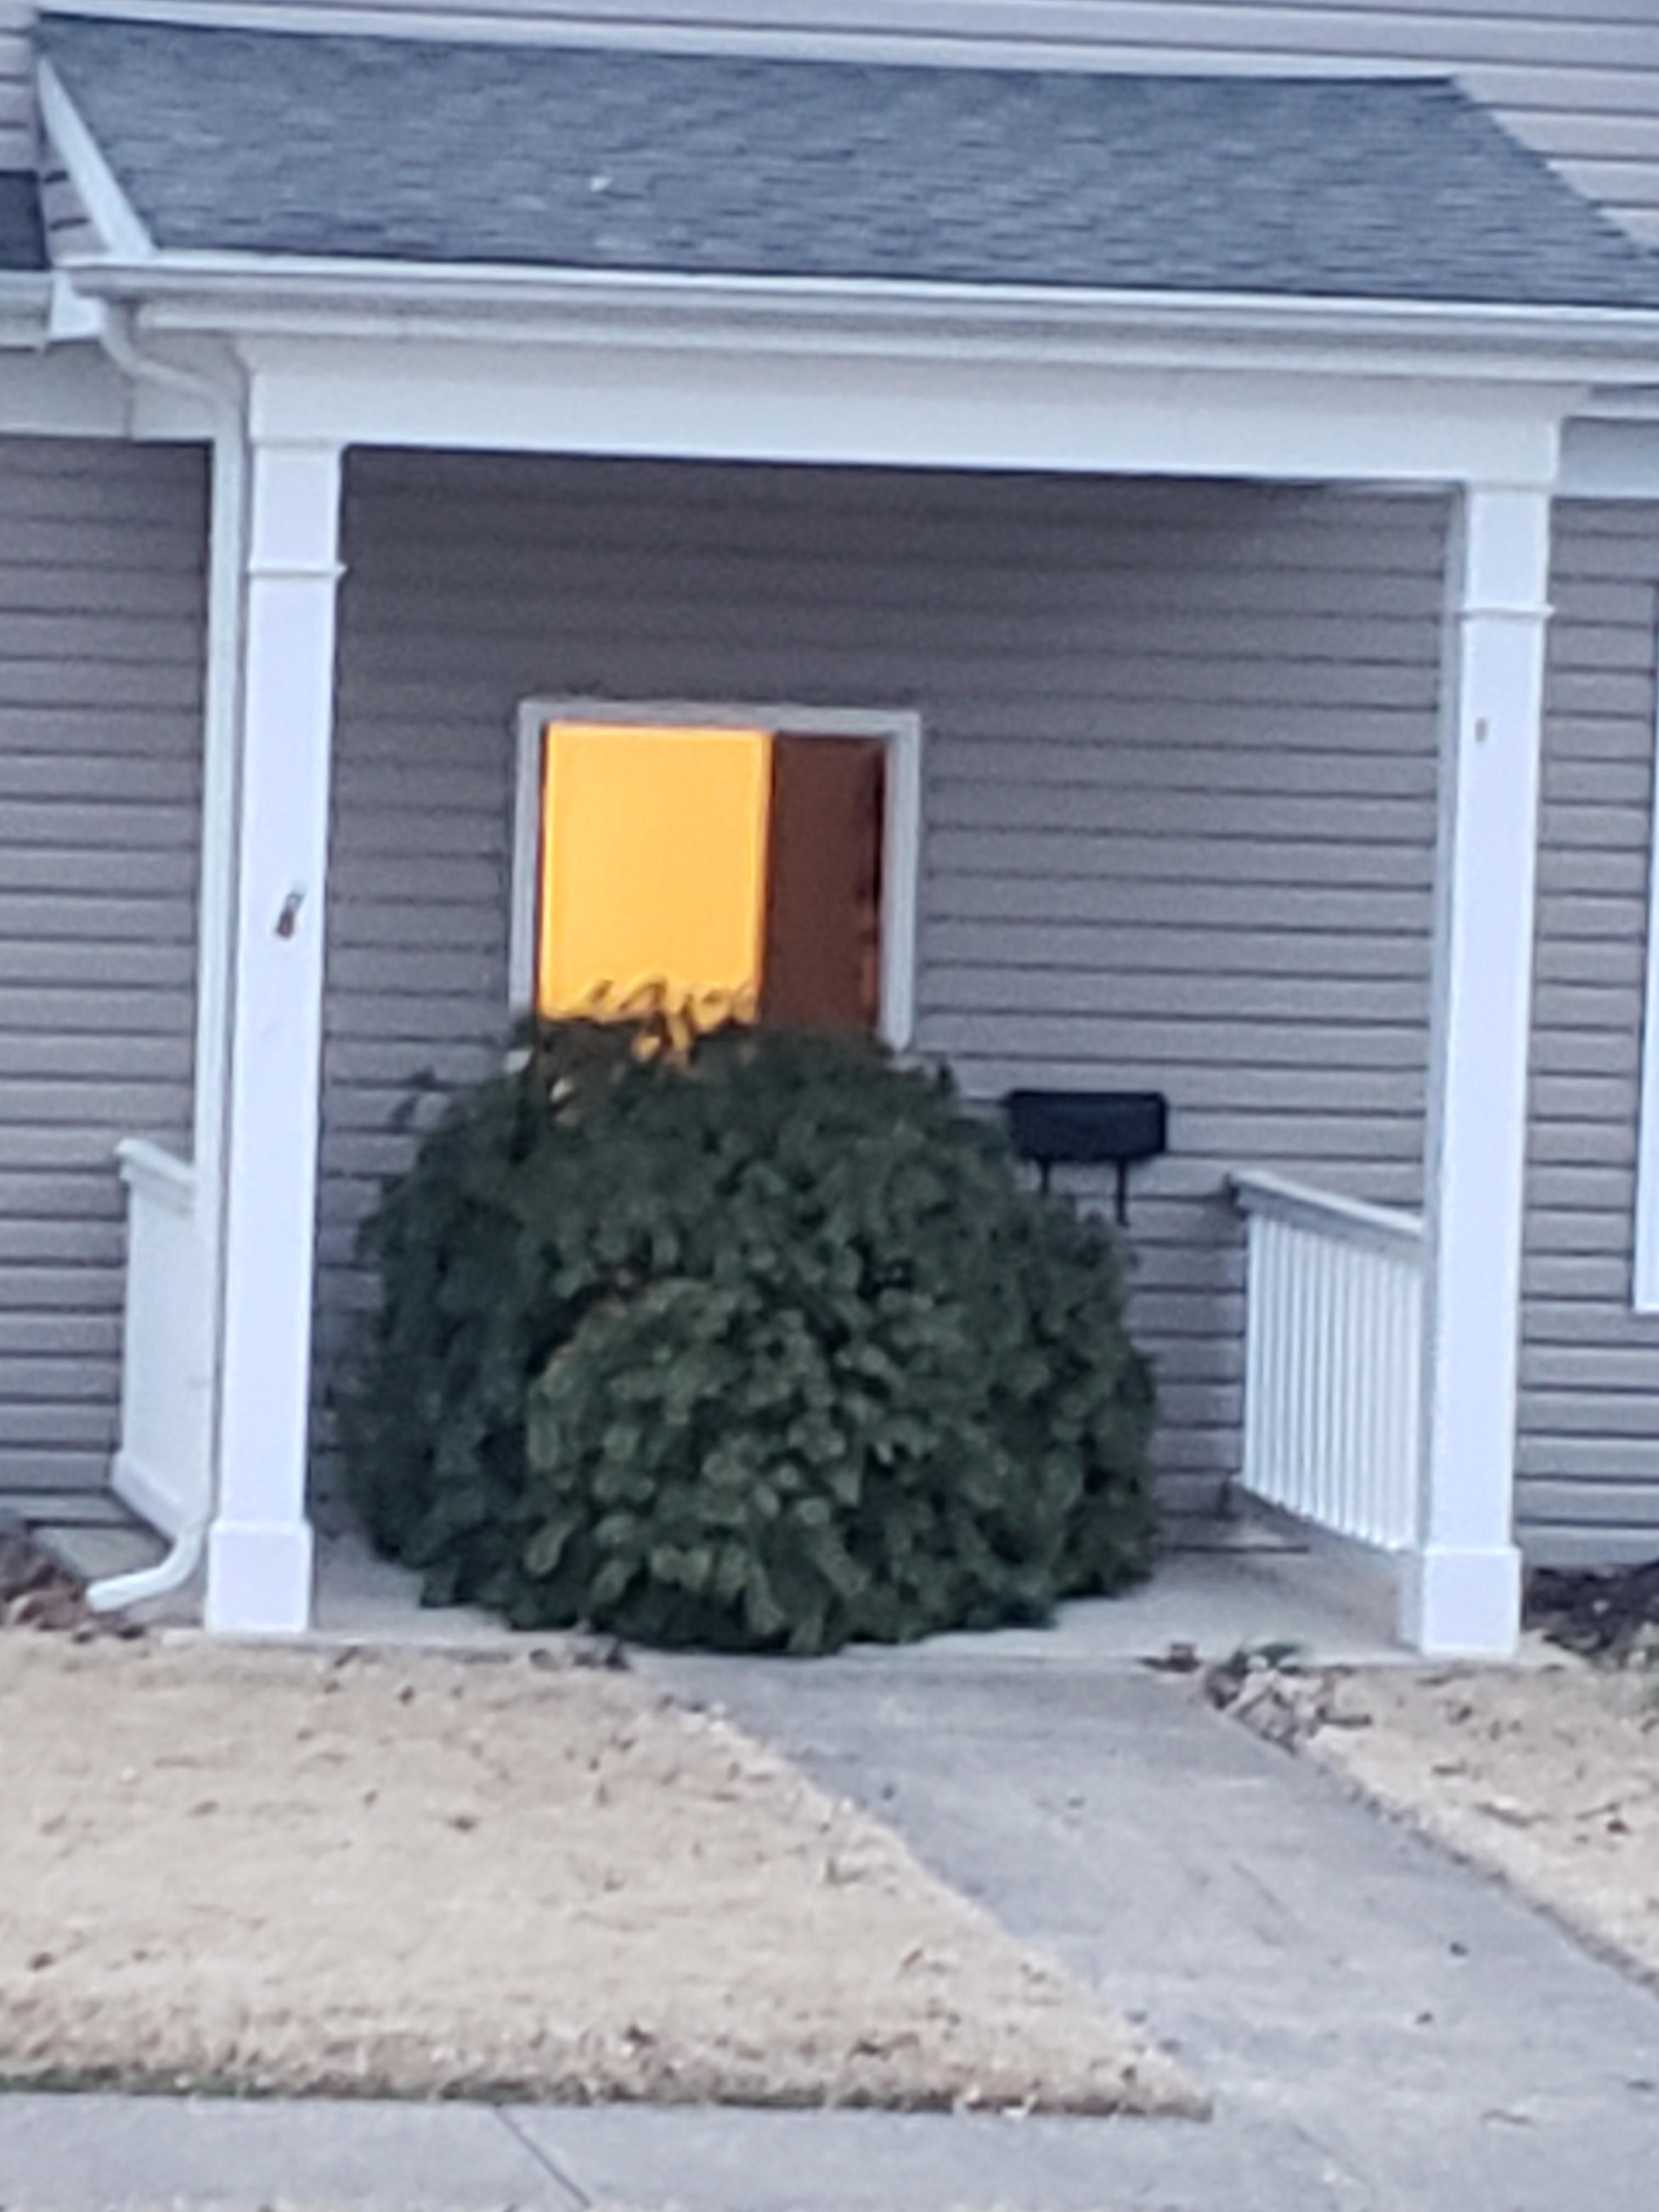 My neighbors Christmas spirit is bigger than his door.